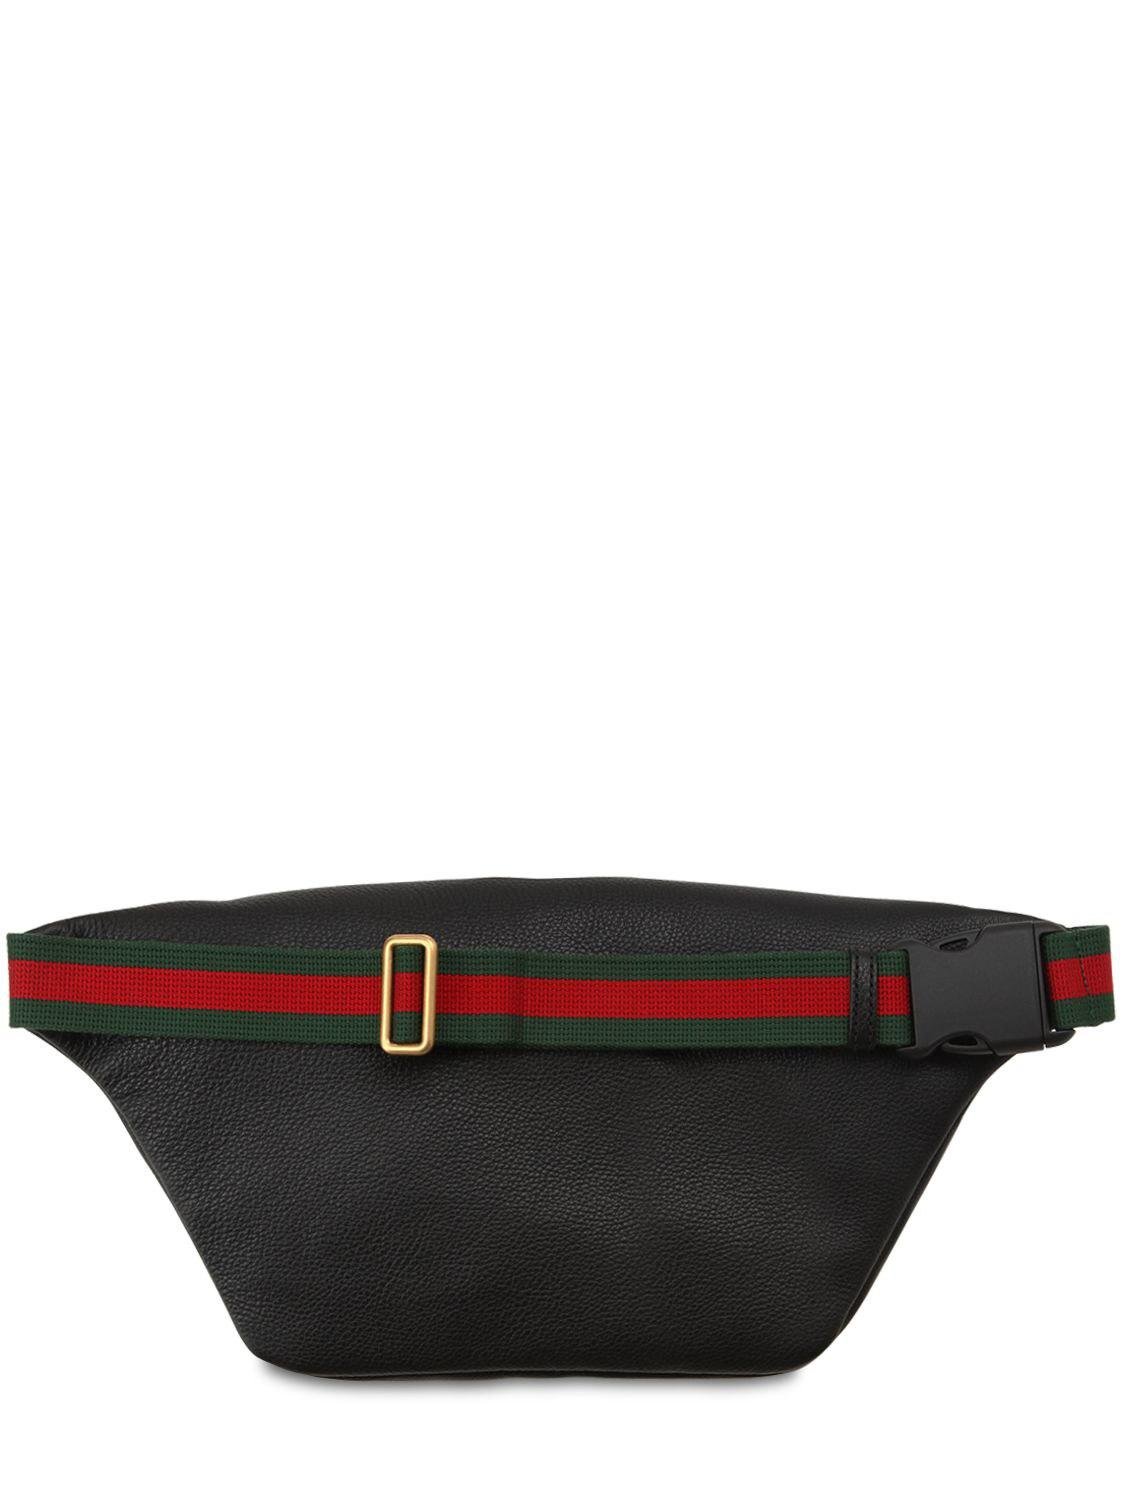 gucci belt bag vintage black